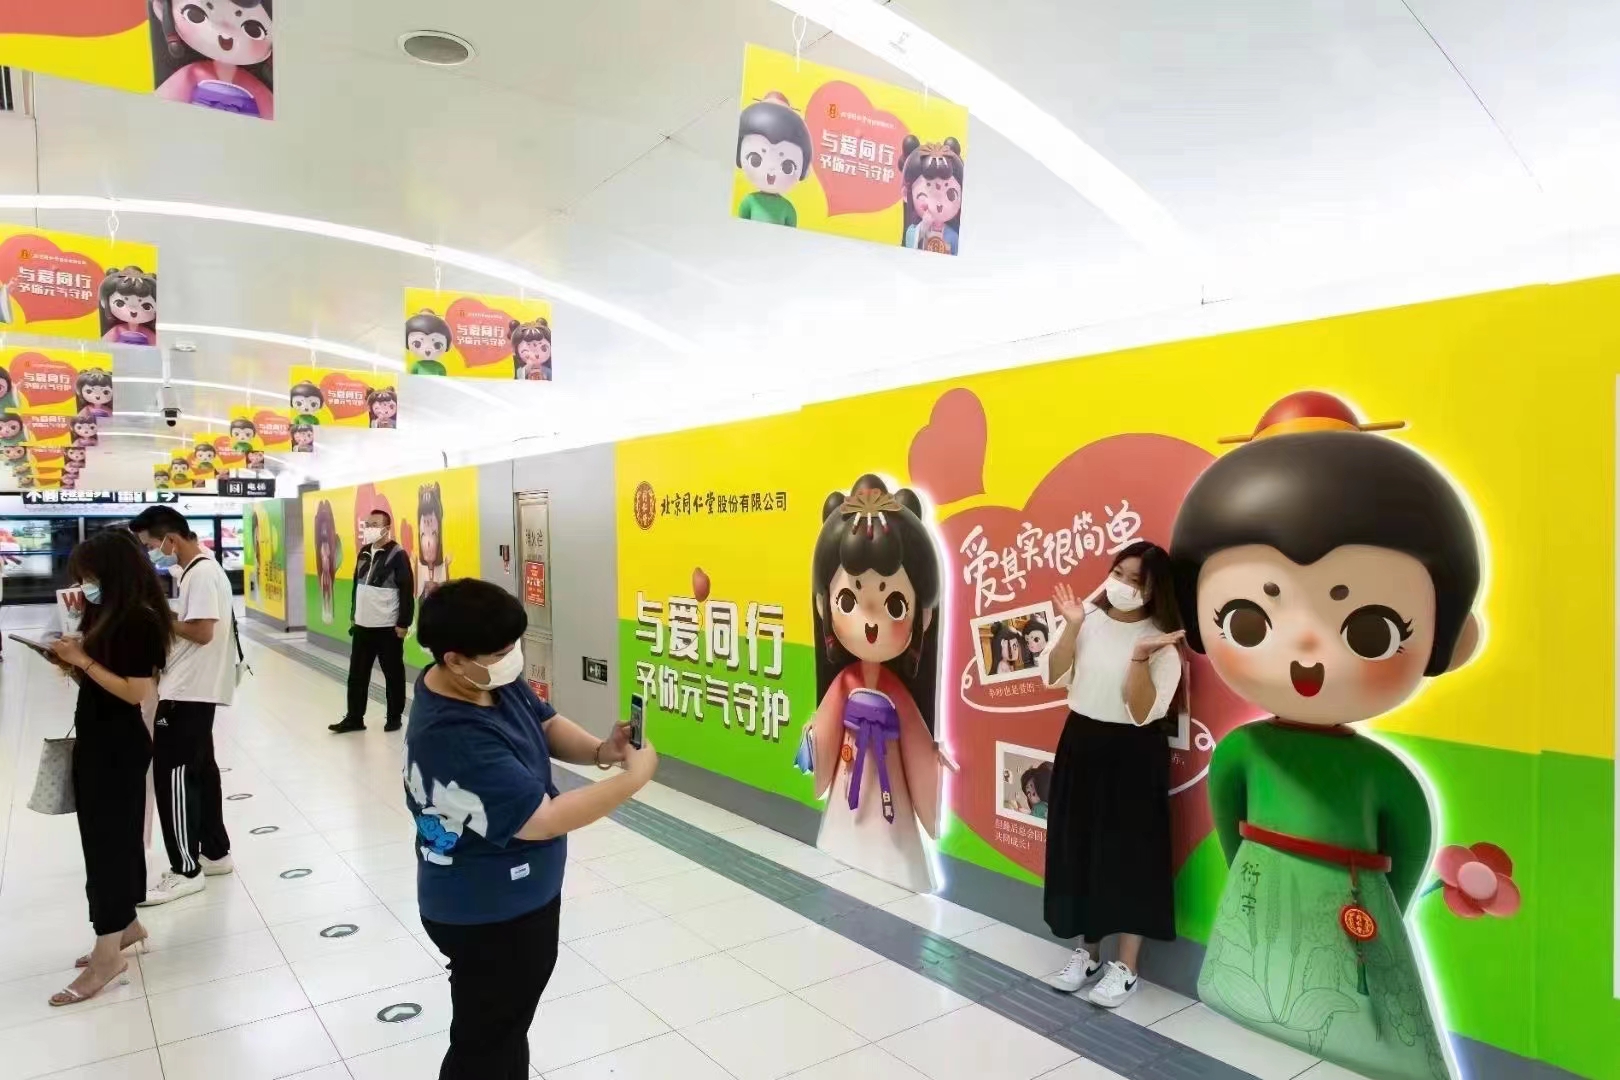 深圳地铁广告销售渠道多方位思考